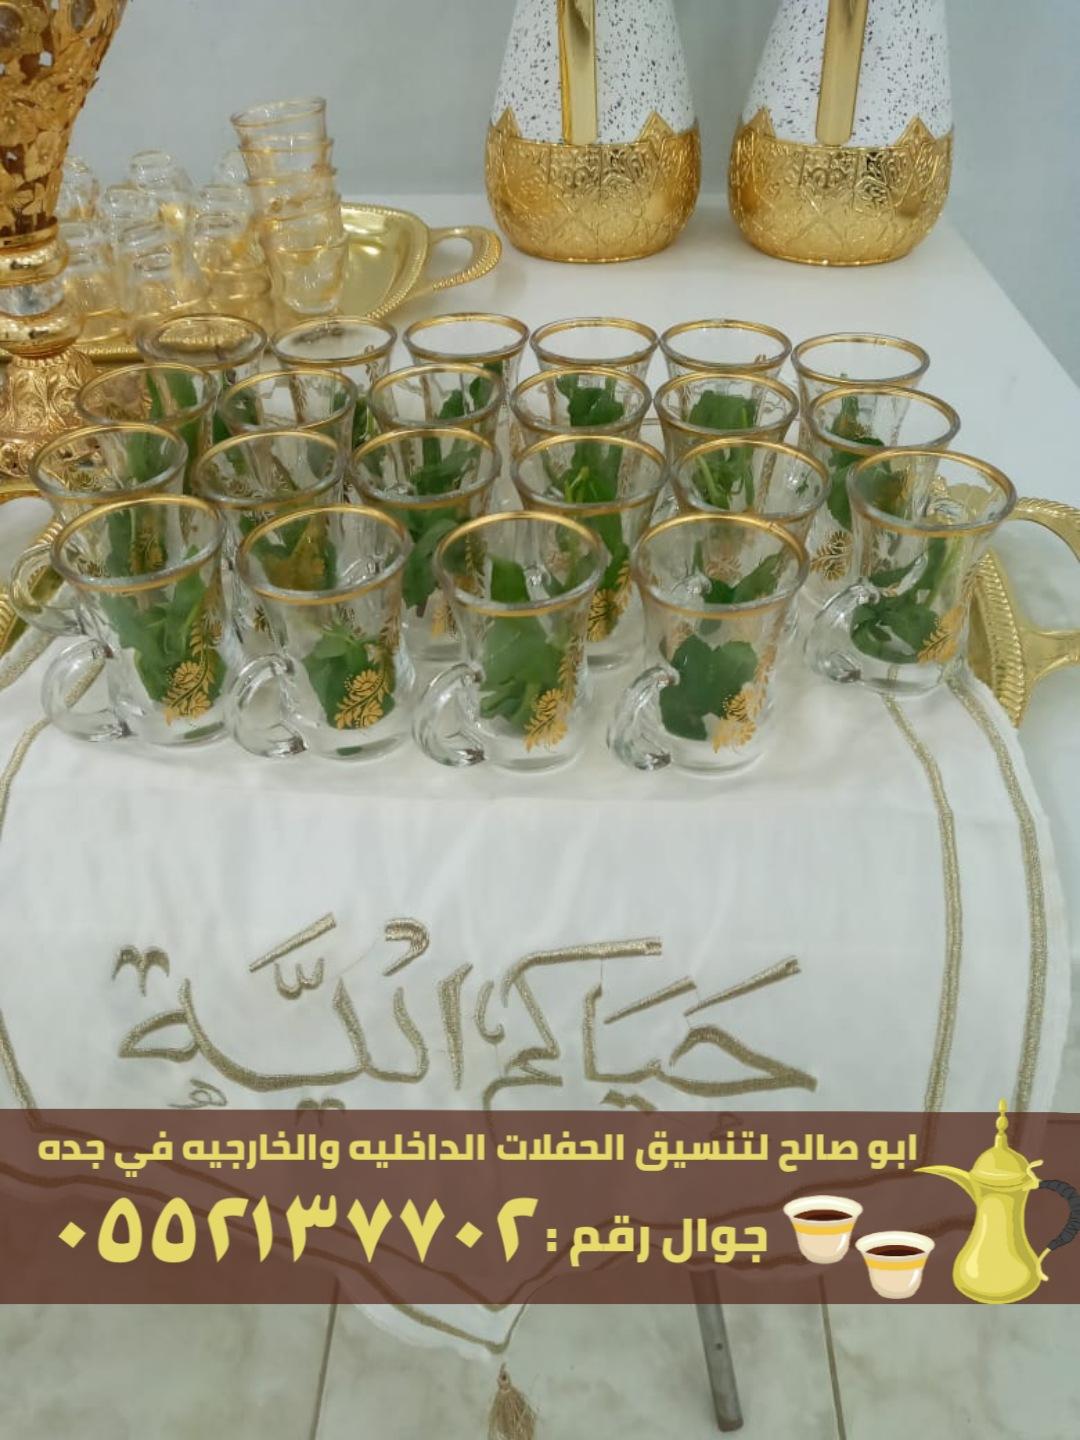 صبابين قهوة و قهوجي ضيافه في جدة,0552137702 618023760